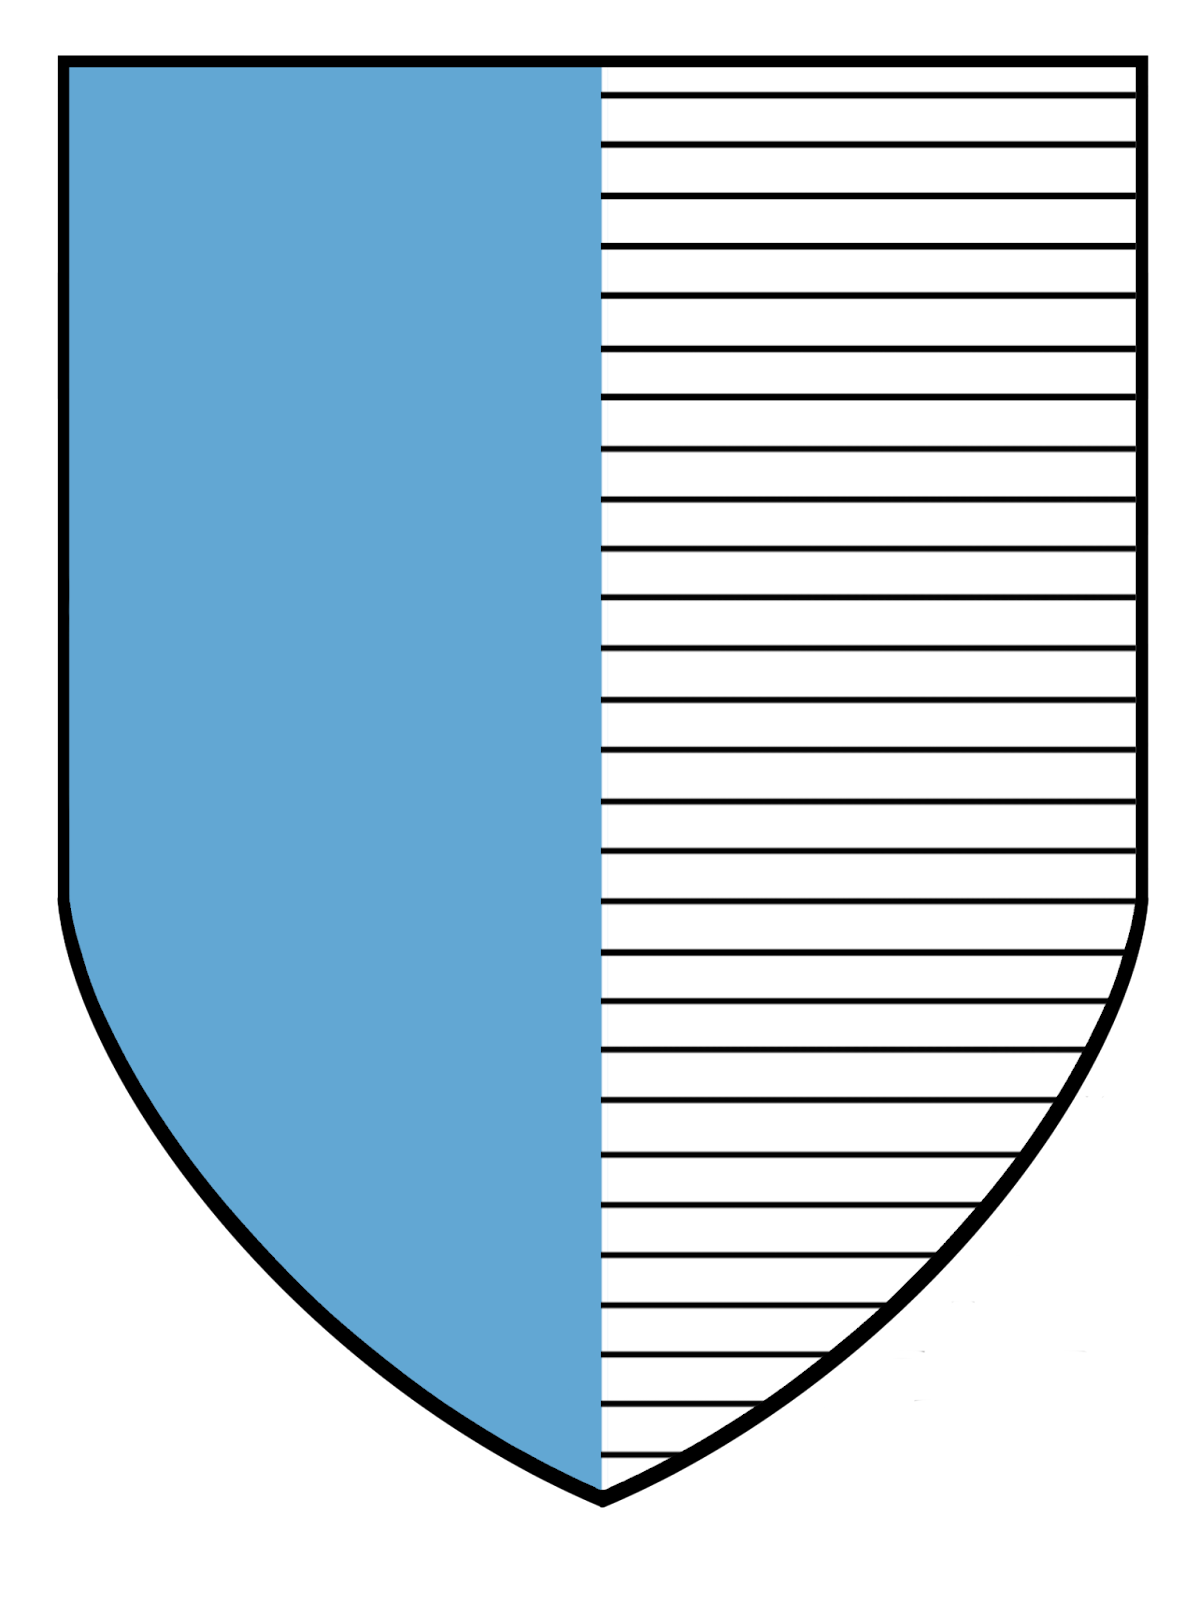 Heraldic Shield Azure.svg